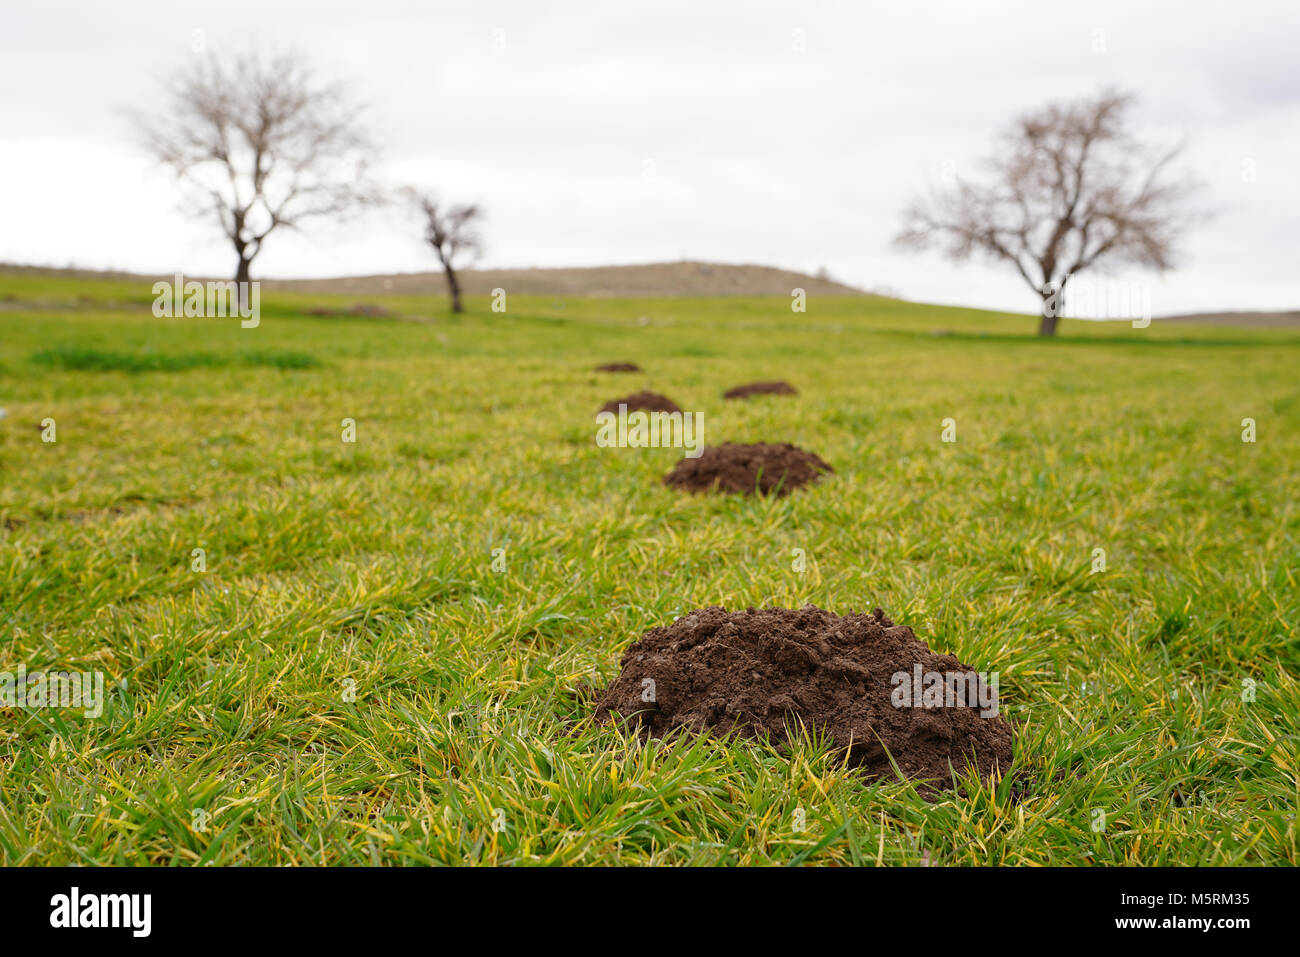 Neue maulwurfshügel auf Rasen durch Maulwürfe Bevölkerung gemacht und mehrere Bäume auf Hintergrund Stockfoto